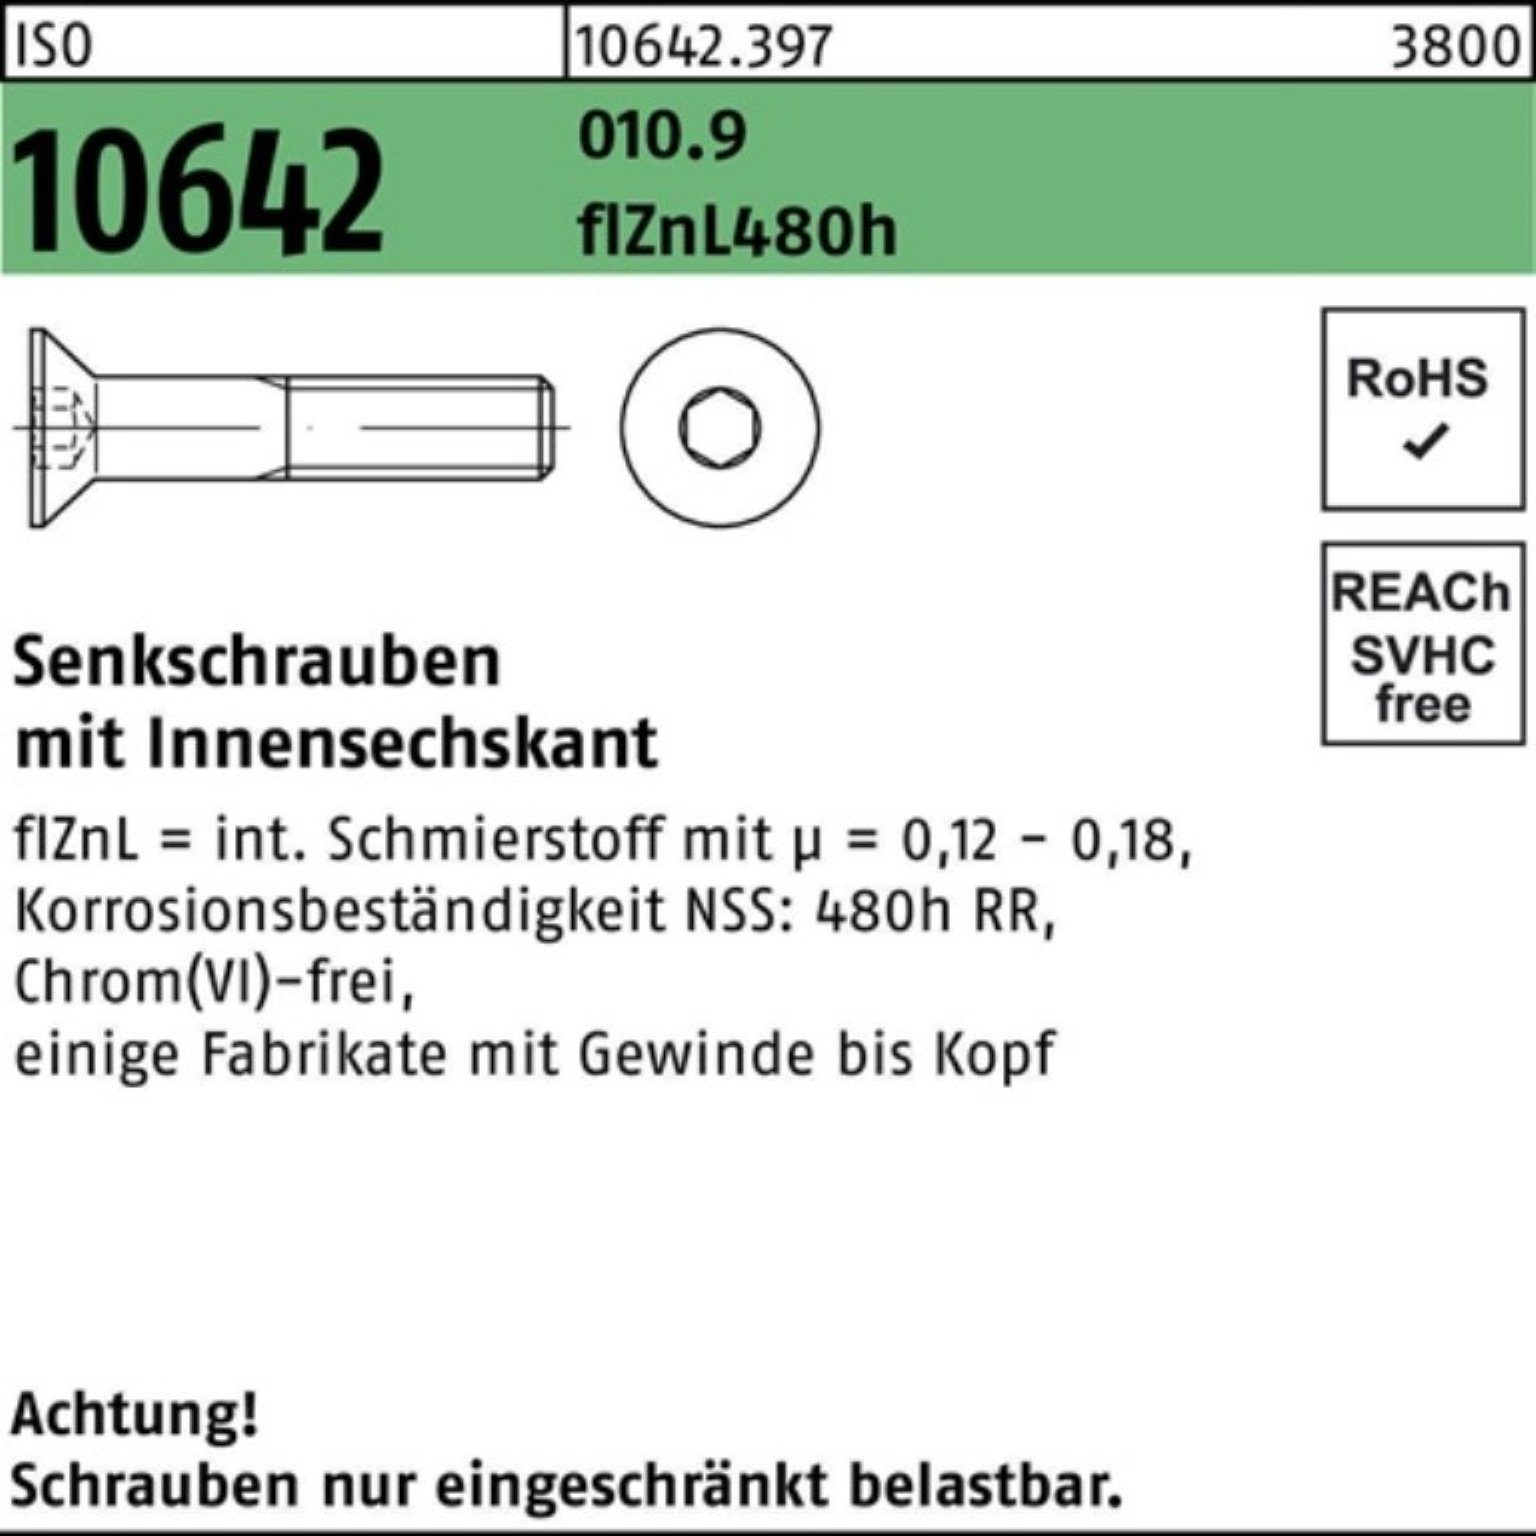 Reyher Senkschraube 100er Pack Senkschraube Innen-6kt 480h zi 10642 ISO flZnL 010.9 M10x45